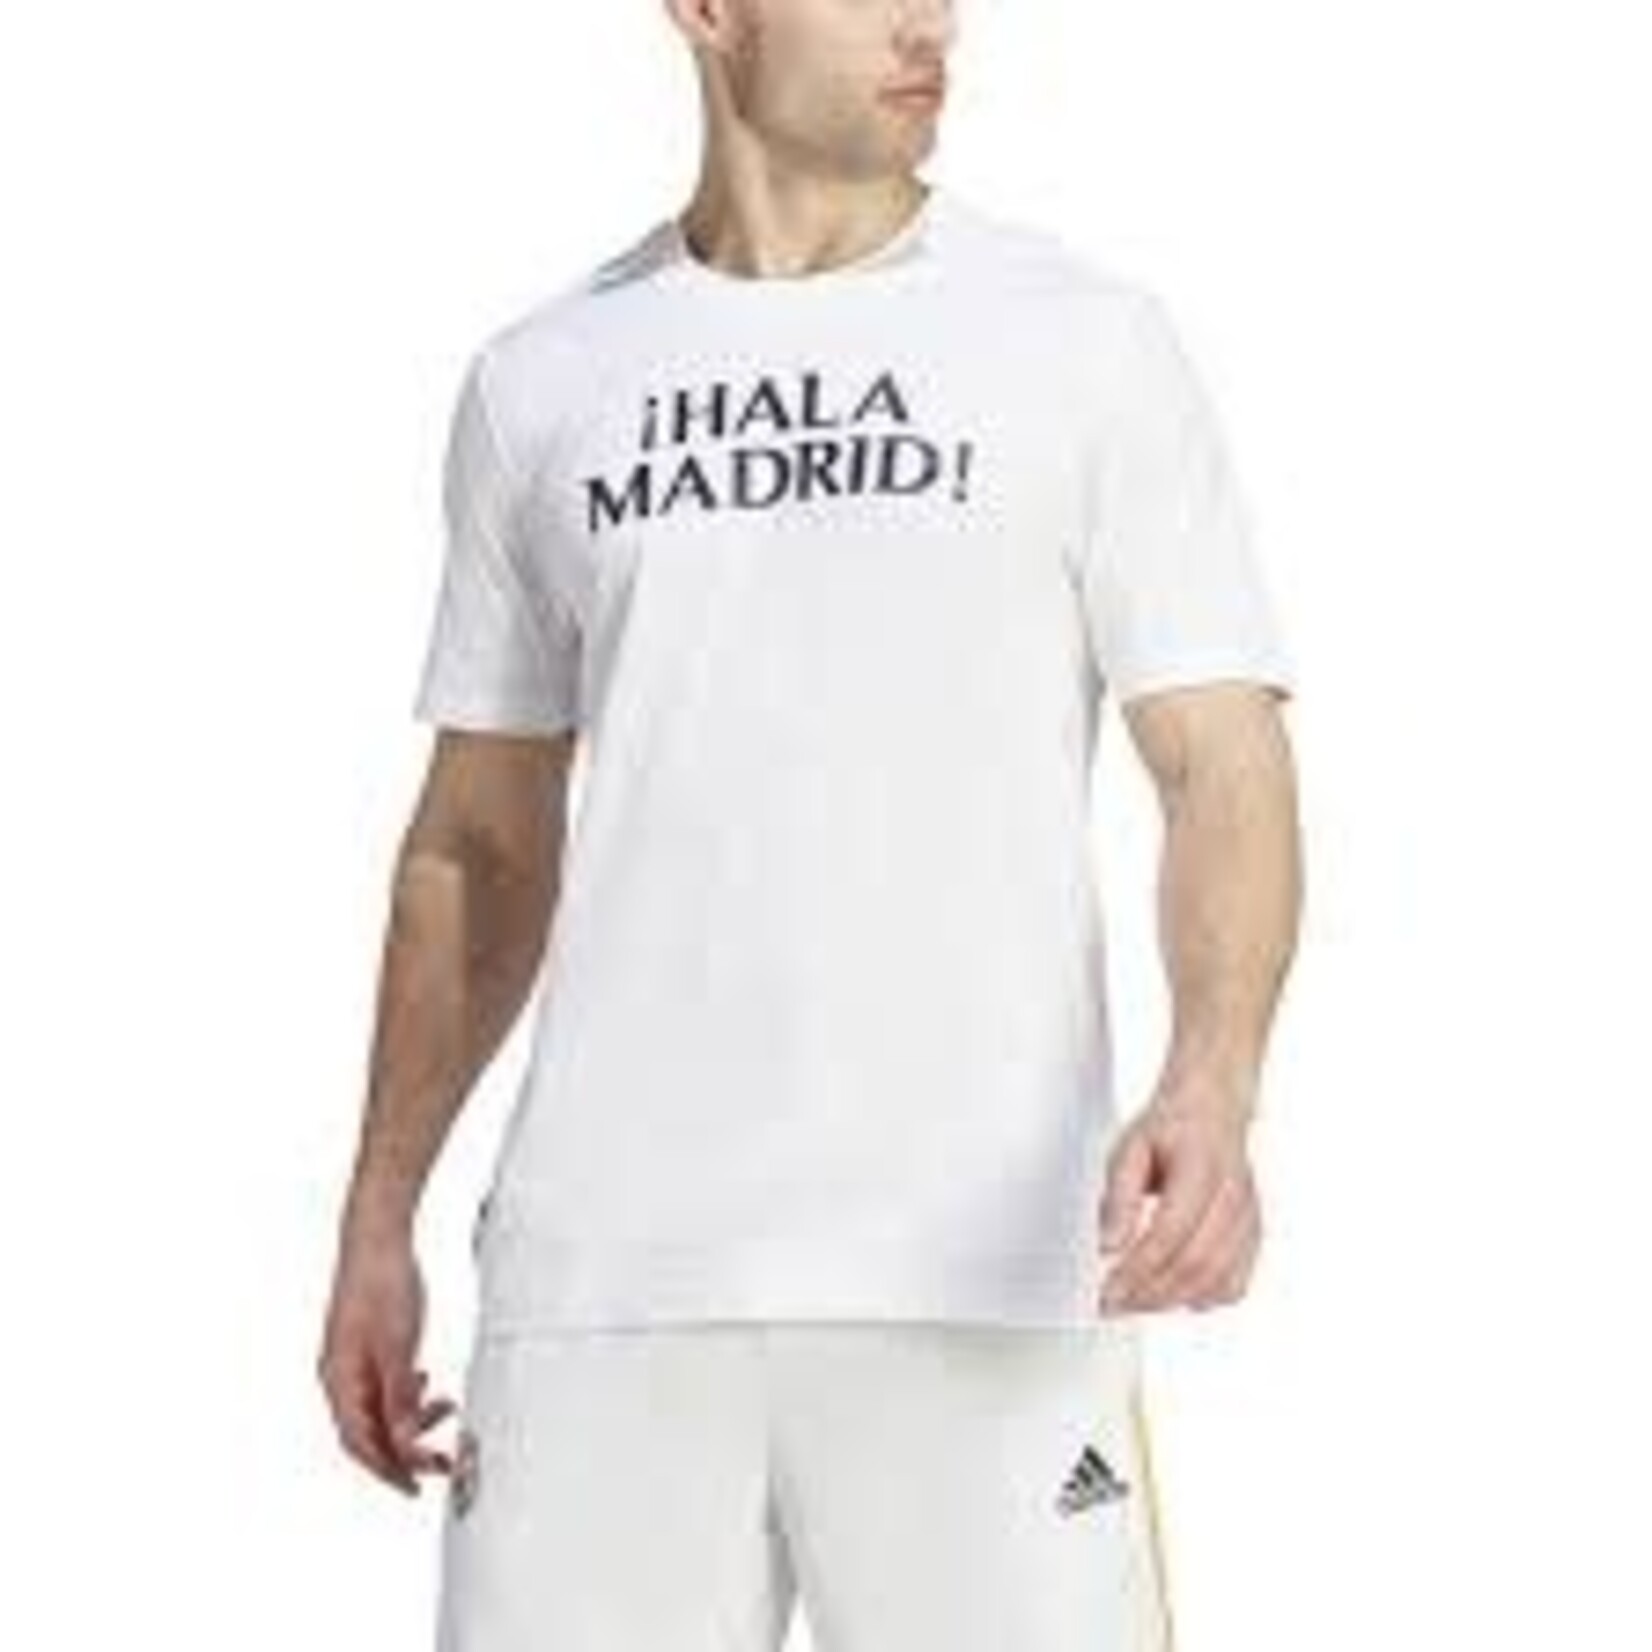 Adidas Real Madrid Hala Madrid Tee - HY0625